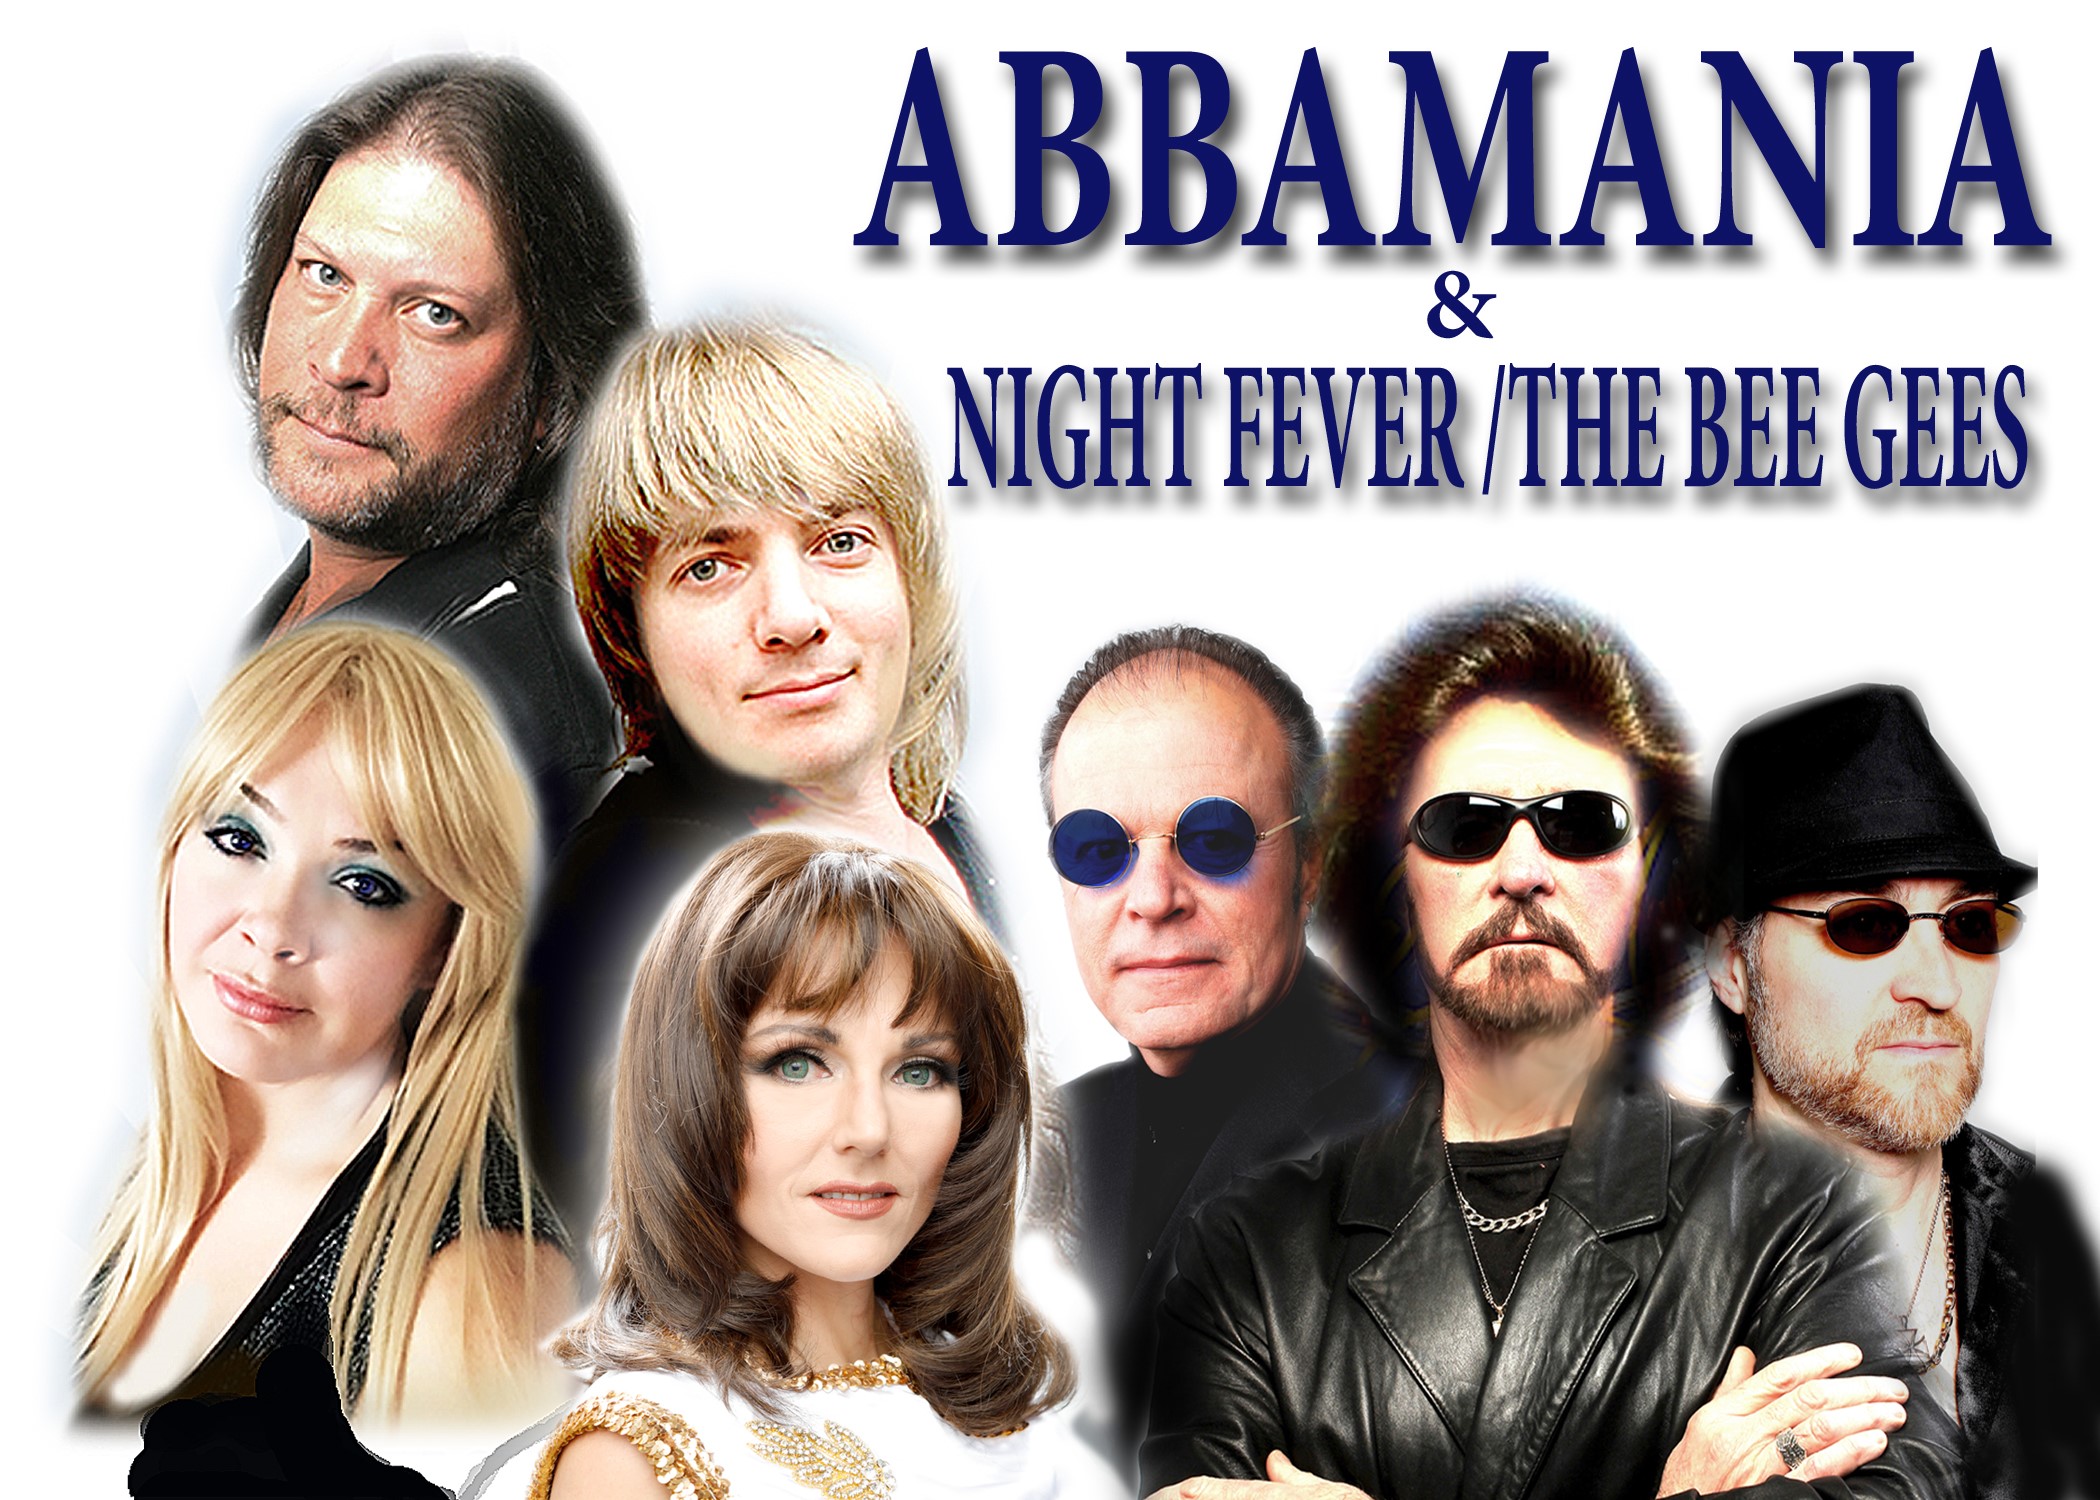 ABBAMANIA & NIGHT FEVER